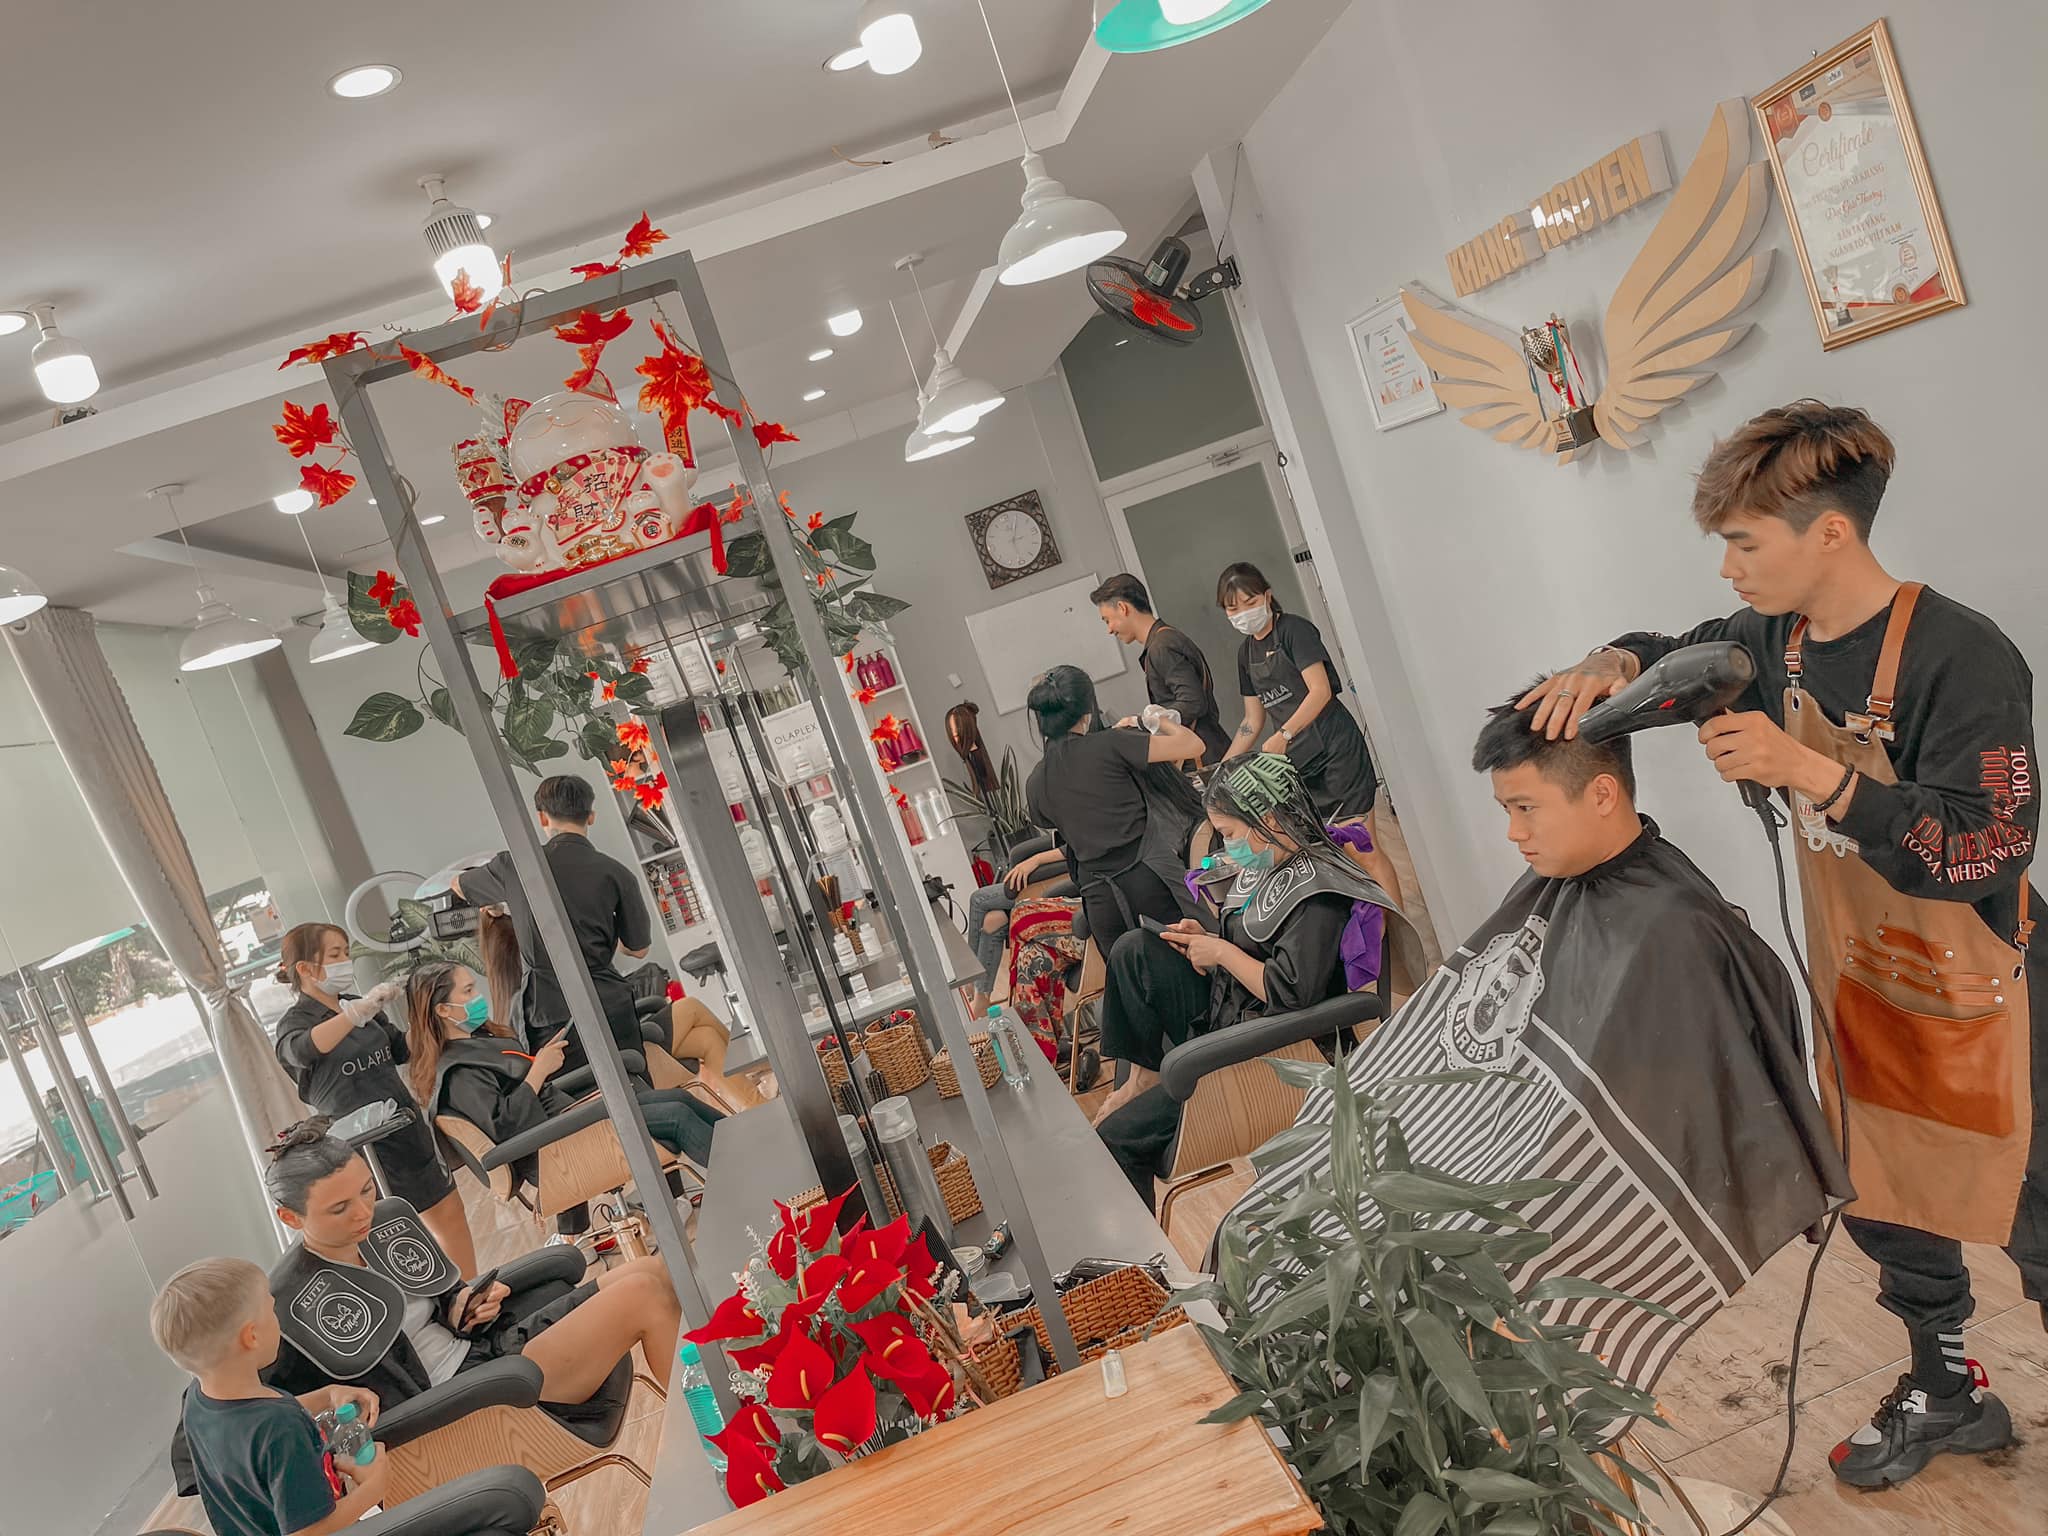 Tại tiệm cắt tóc nam Phú Quốc, bạn sẽ được phục vụ bởi đội ngũ thợ chuyên nghiệp, thân thiện và dễ thương. Không chỉ cắt tóc đúng đẳng cấp, chúng tôi còn tư vấn và đề xuất những kiểu tóc phù hợp với từng gương mặt khách hàng.